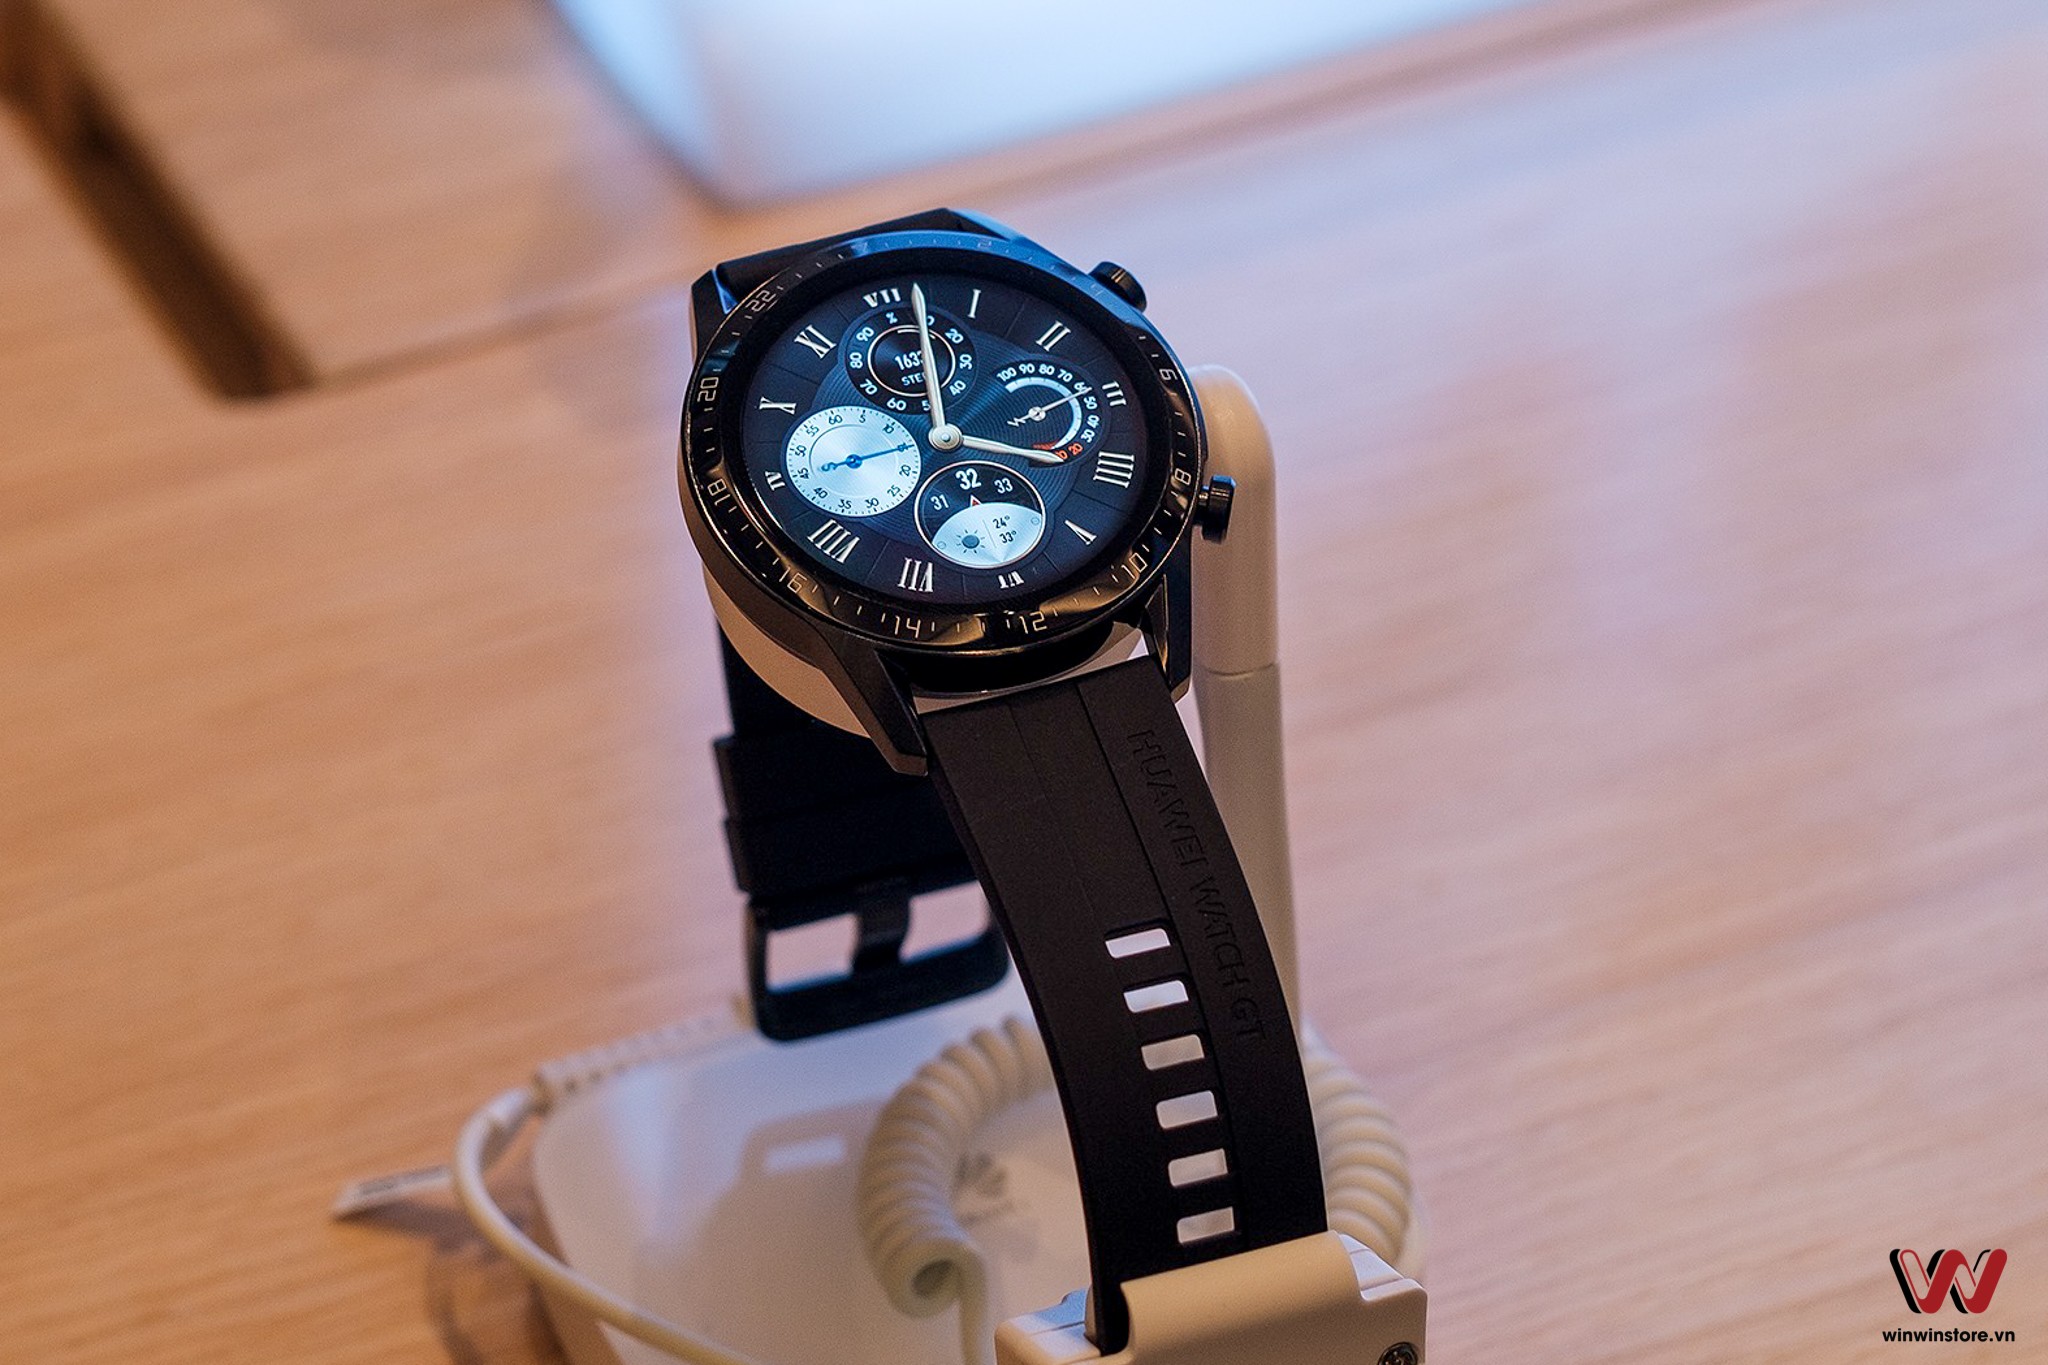 Huawei ra mắt Watch GT 2 tại thị trường Việt Nam và "bật mí" về Mate 30 Pro